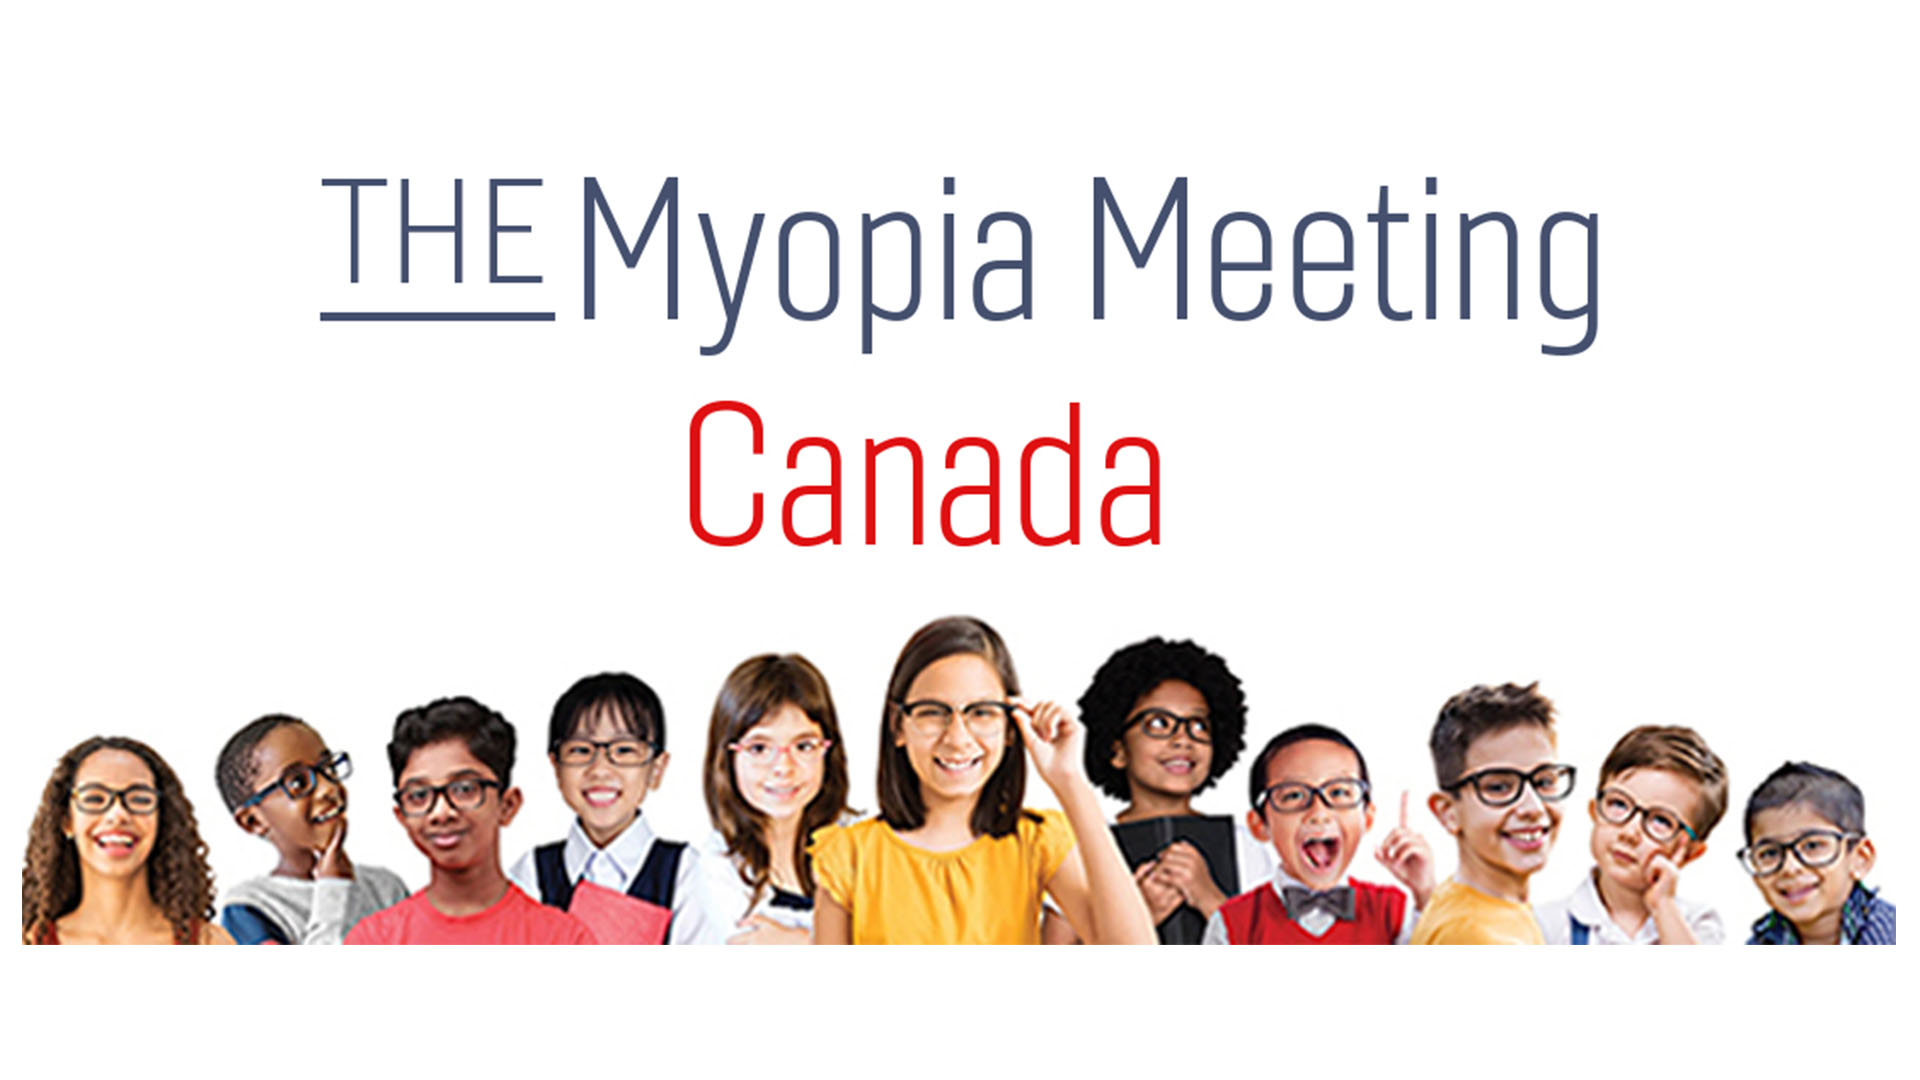 The Myopia Meeting Canada